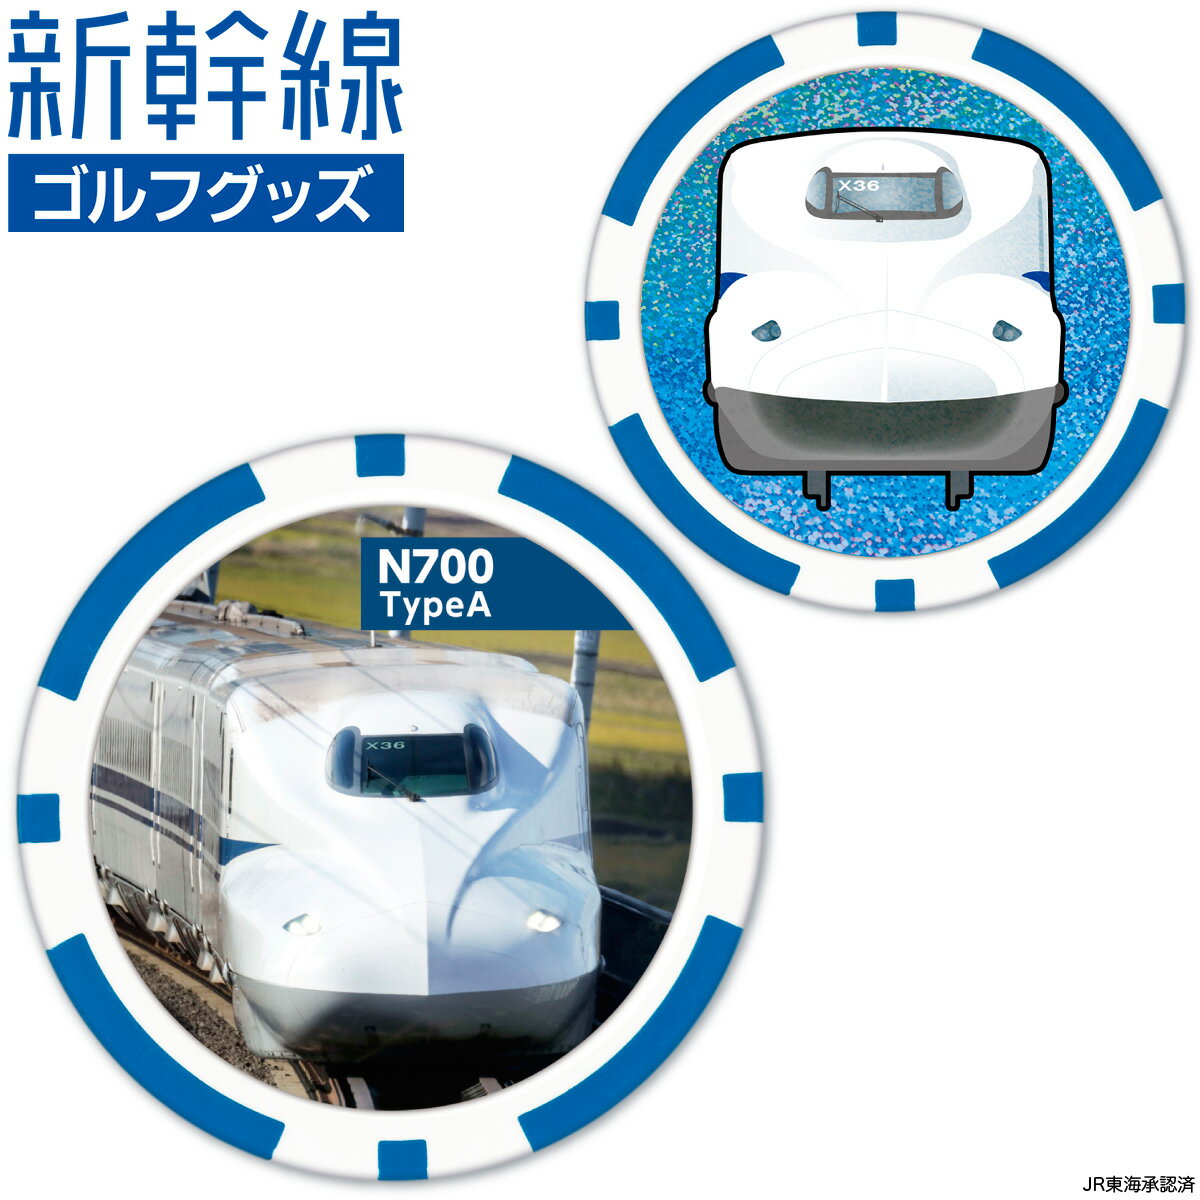 新幹線 N700 TypeA ゴルフマーカー ( チップタイプ ) 「 SKSMC002 」 【あす楽対応】